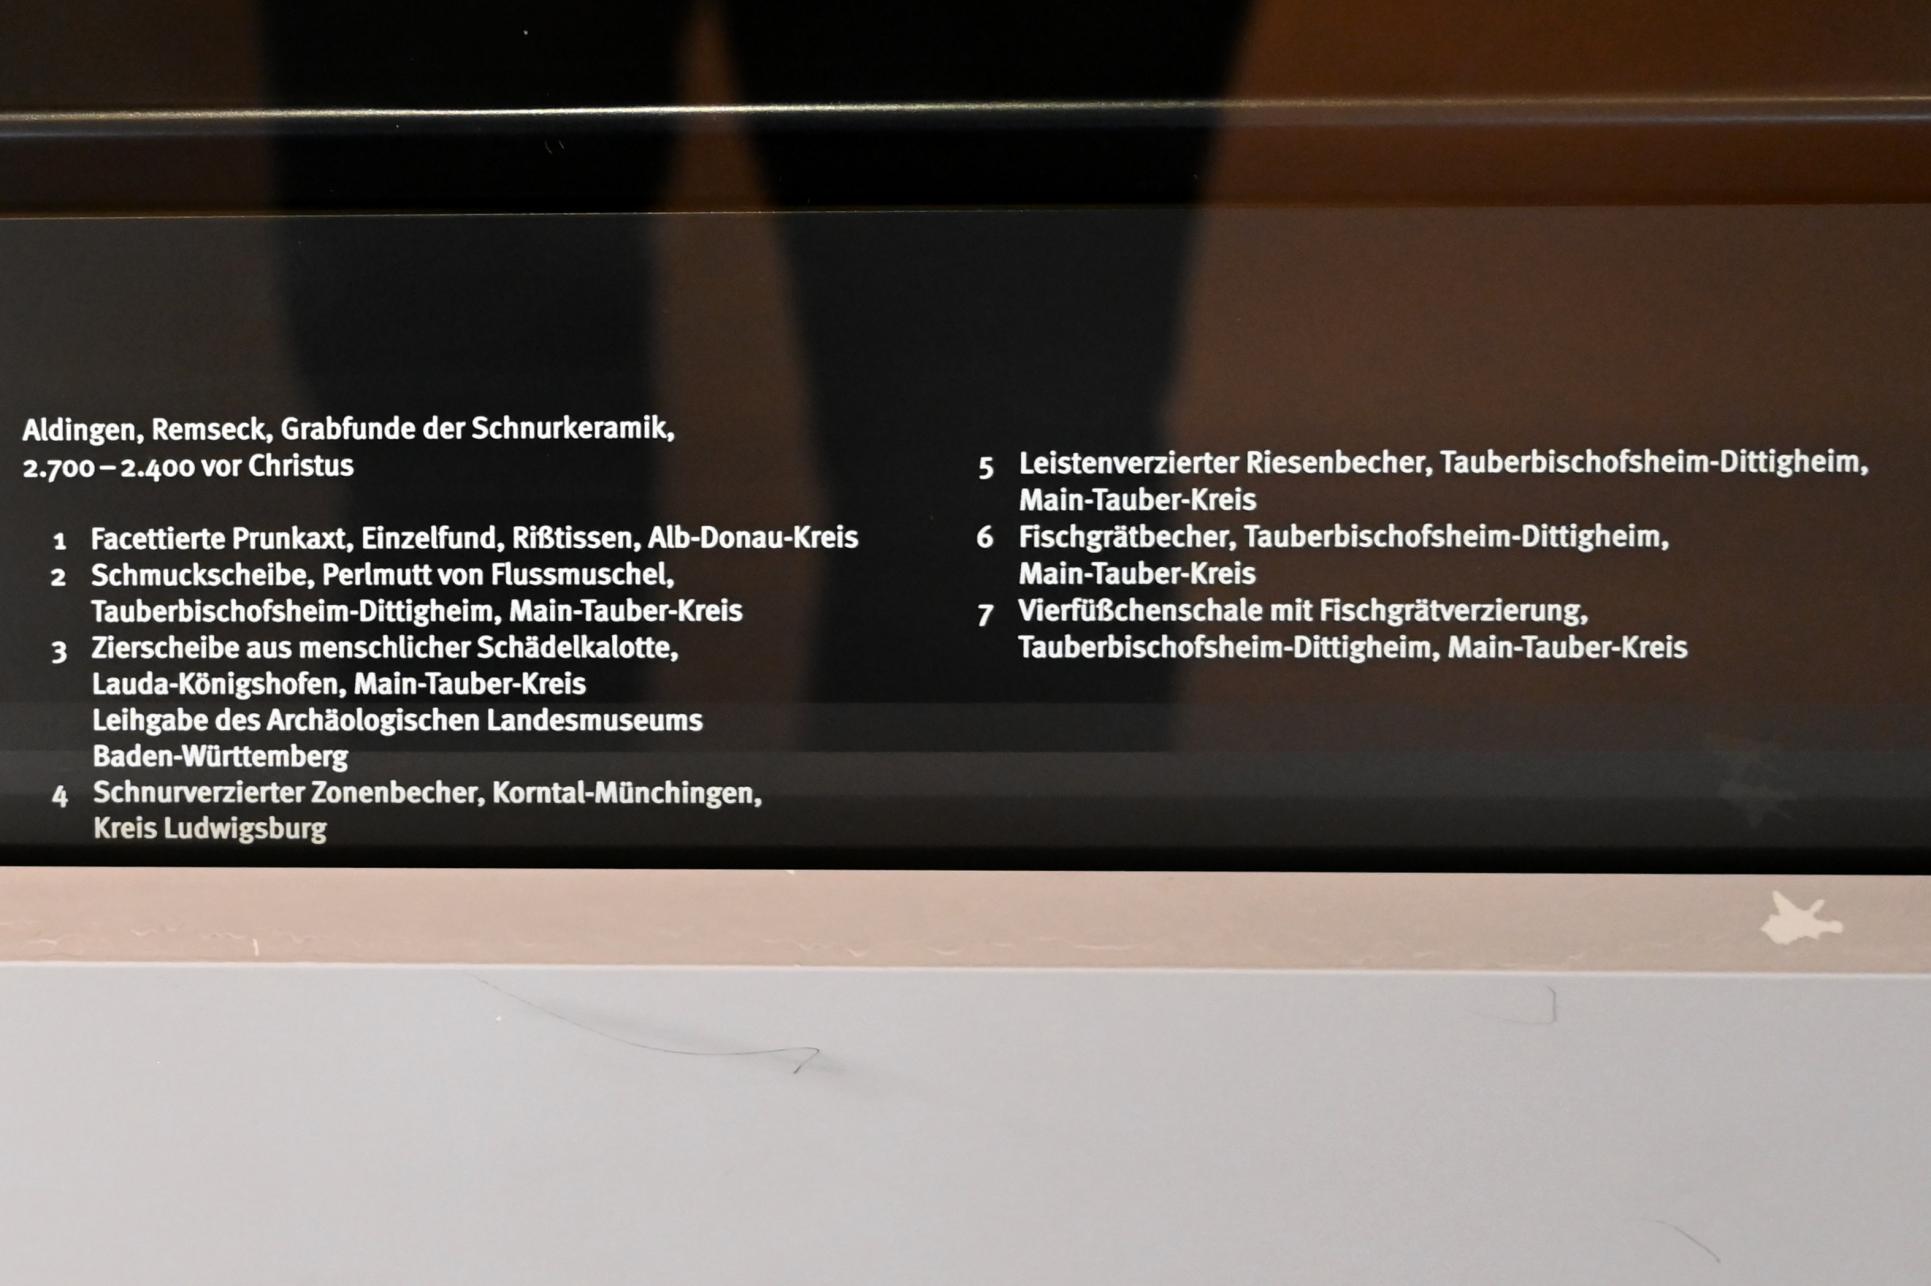 Vierfüßchenschale mit Fischgrätverzierung, Neolithikum (Jungsteinzeit), 5500 - 1700 v. Chr., 2700 - 2400 v. Chr., Bild 2/3